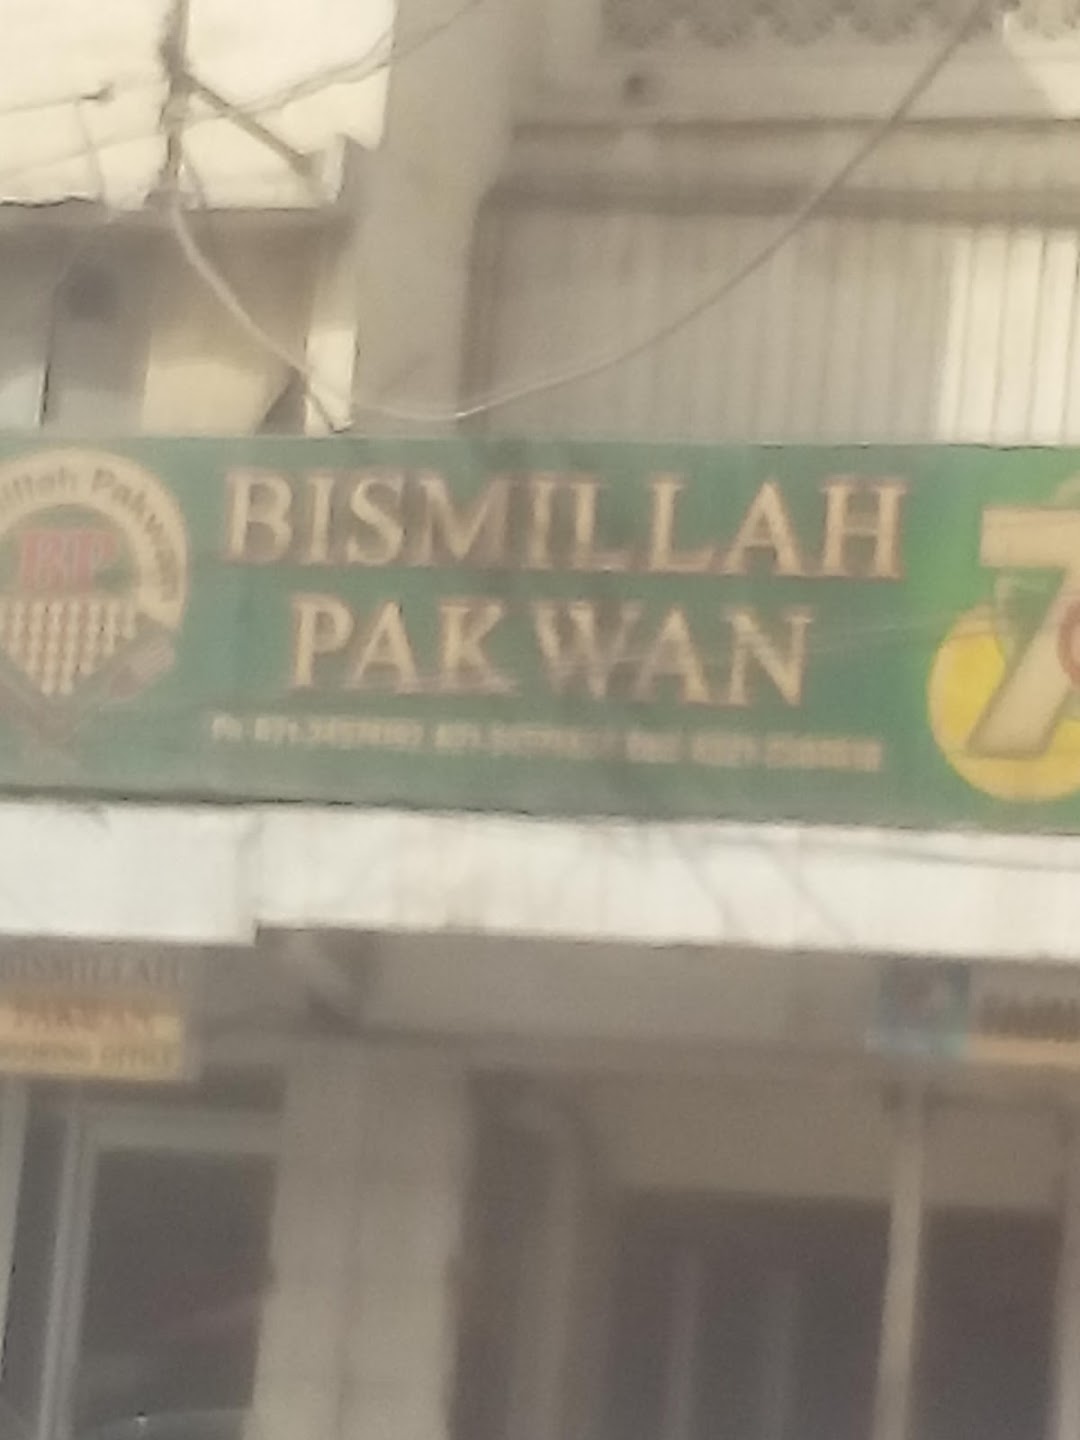 Bismillah Pakwan Center